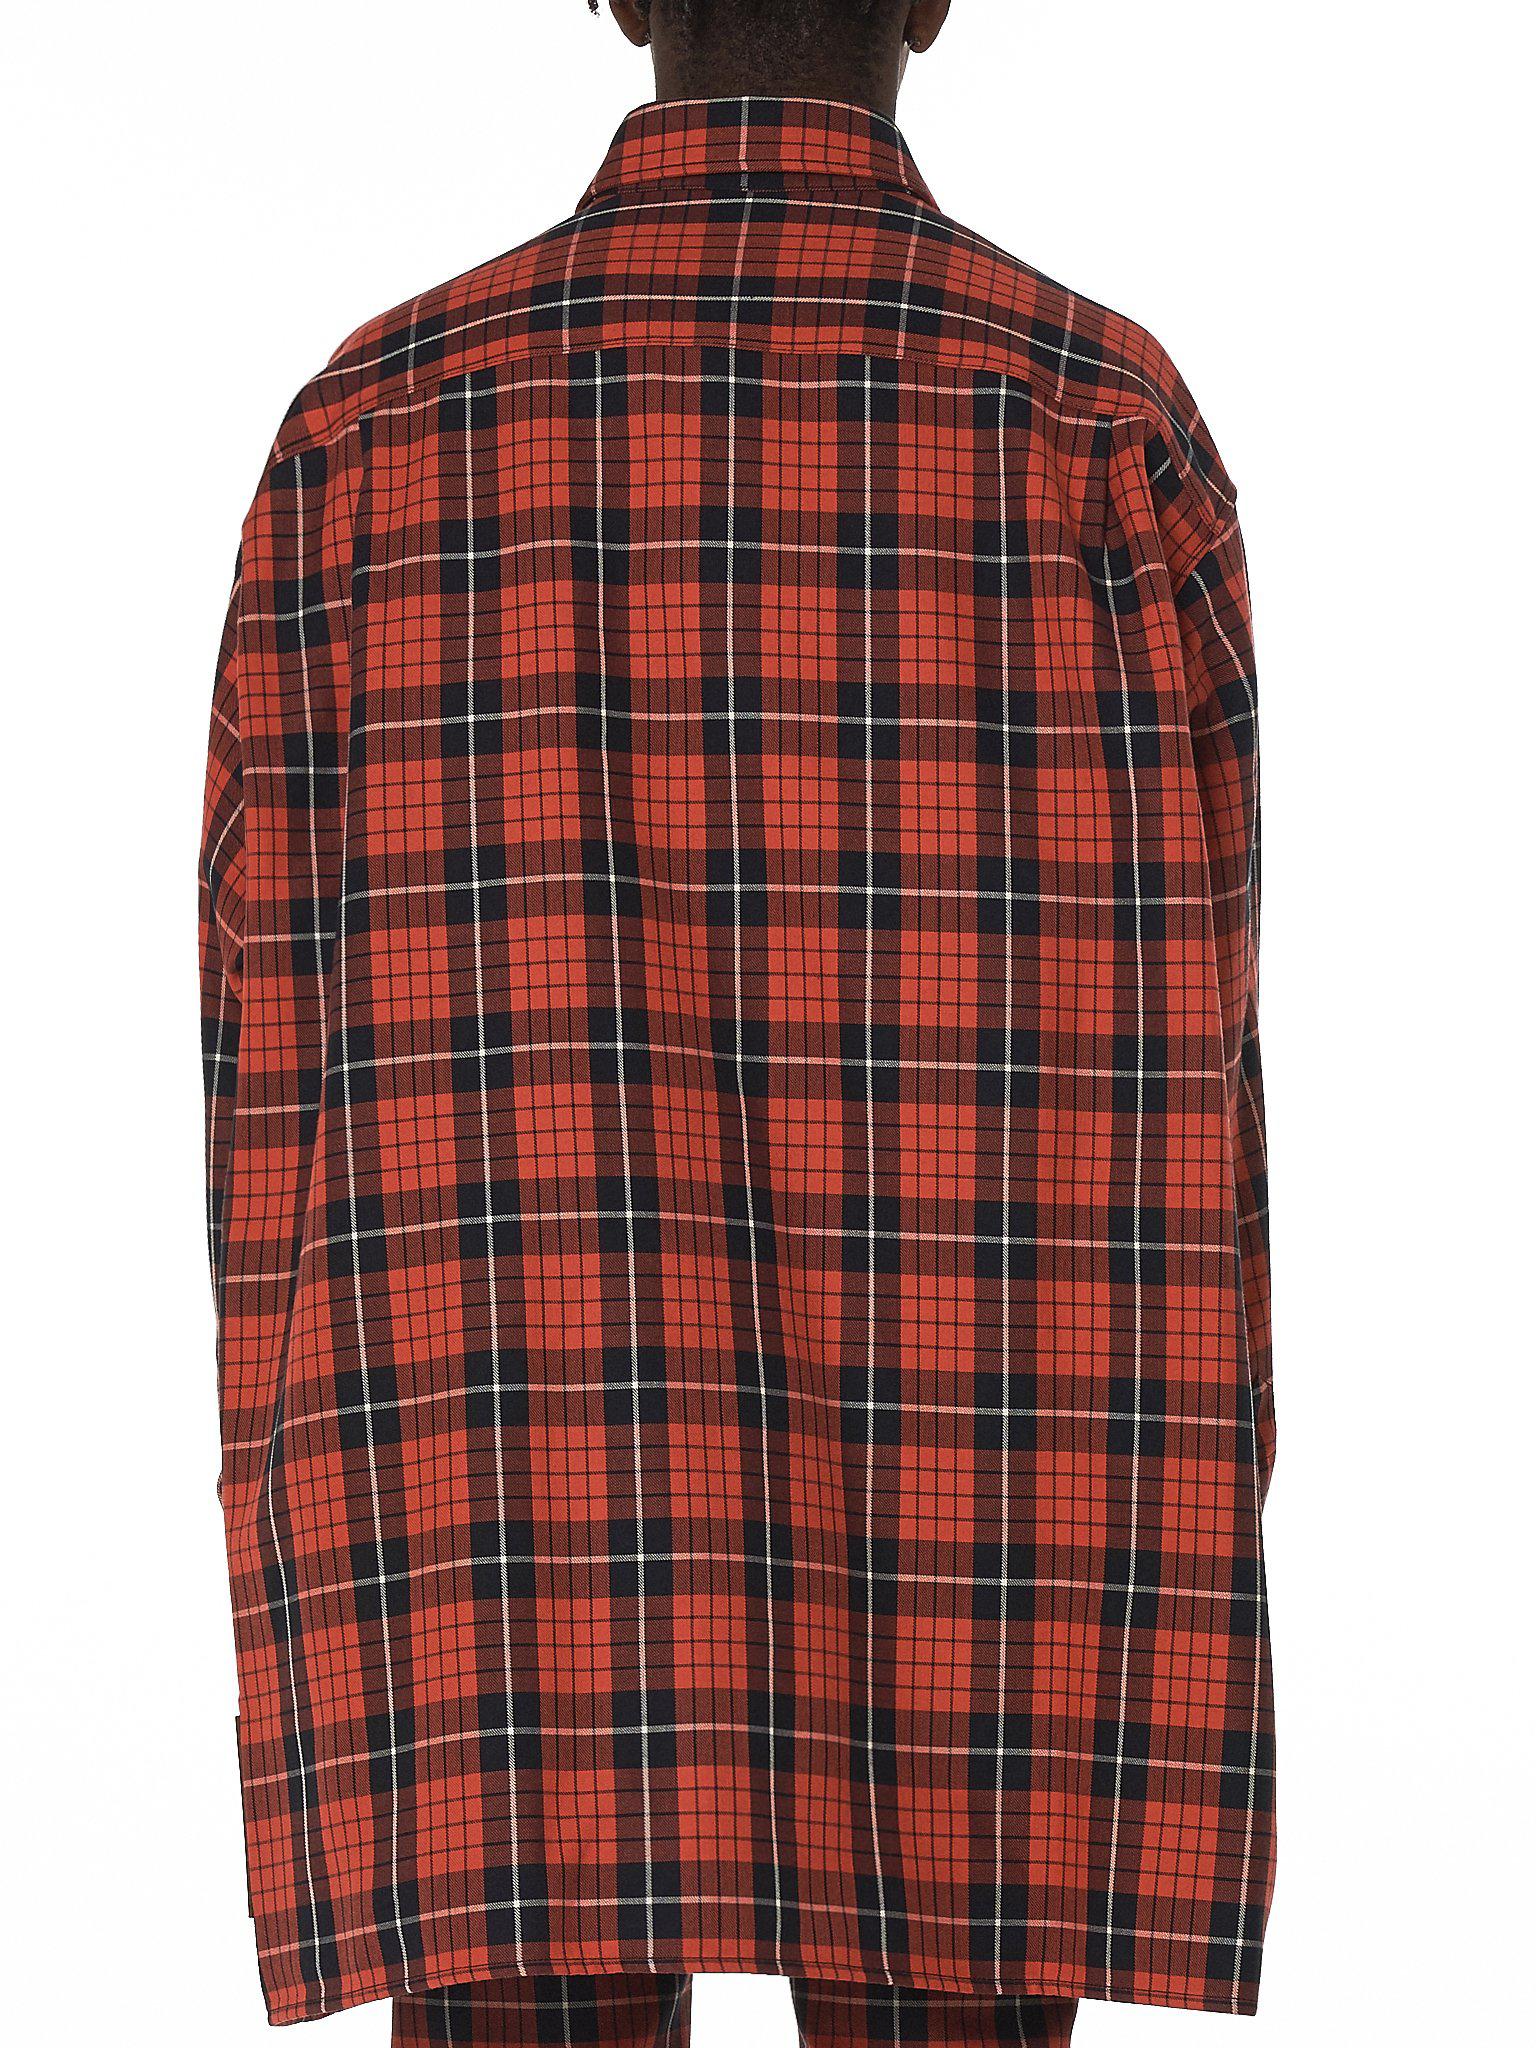 Raf Simons Oversized Check Denim Shirt in Red for Men - Lyst